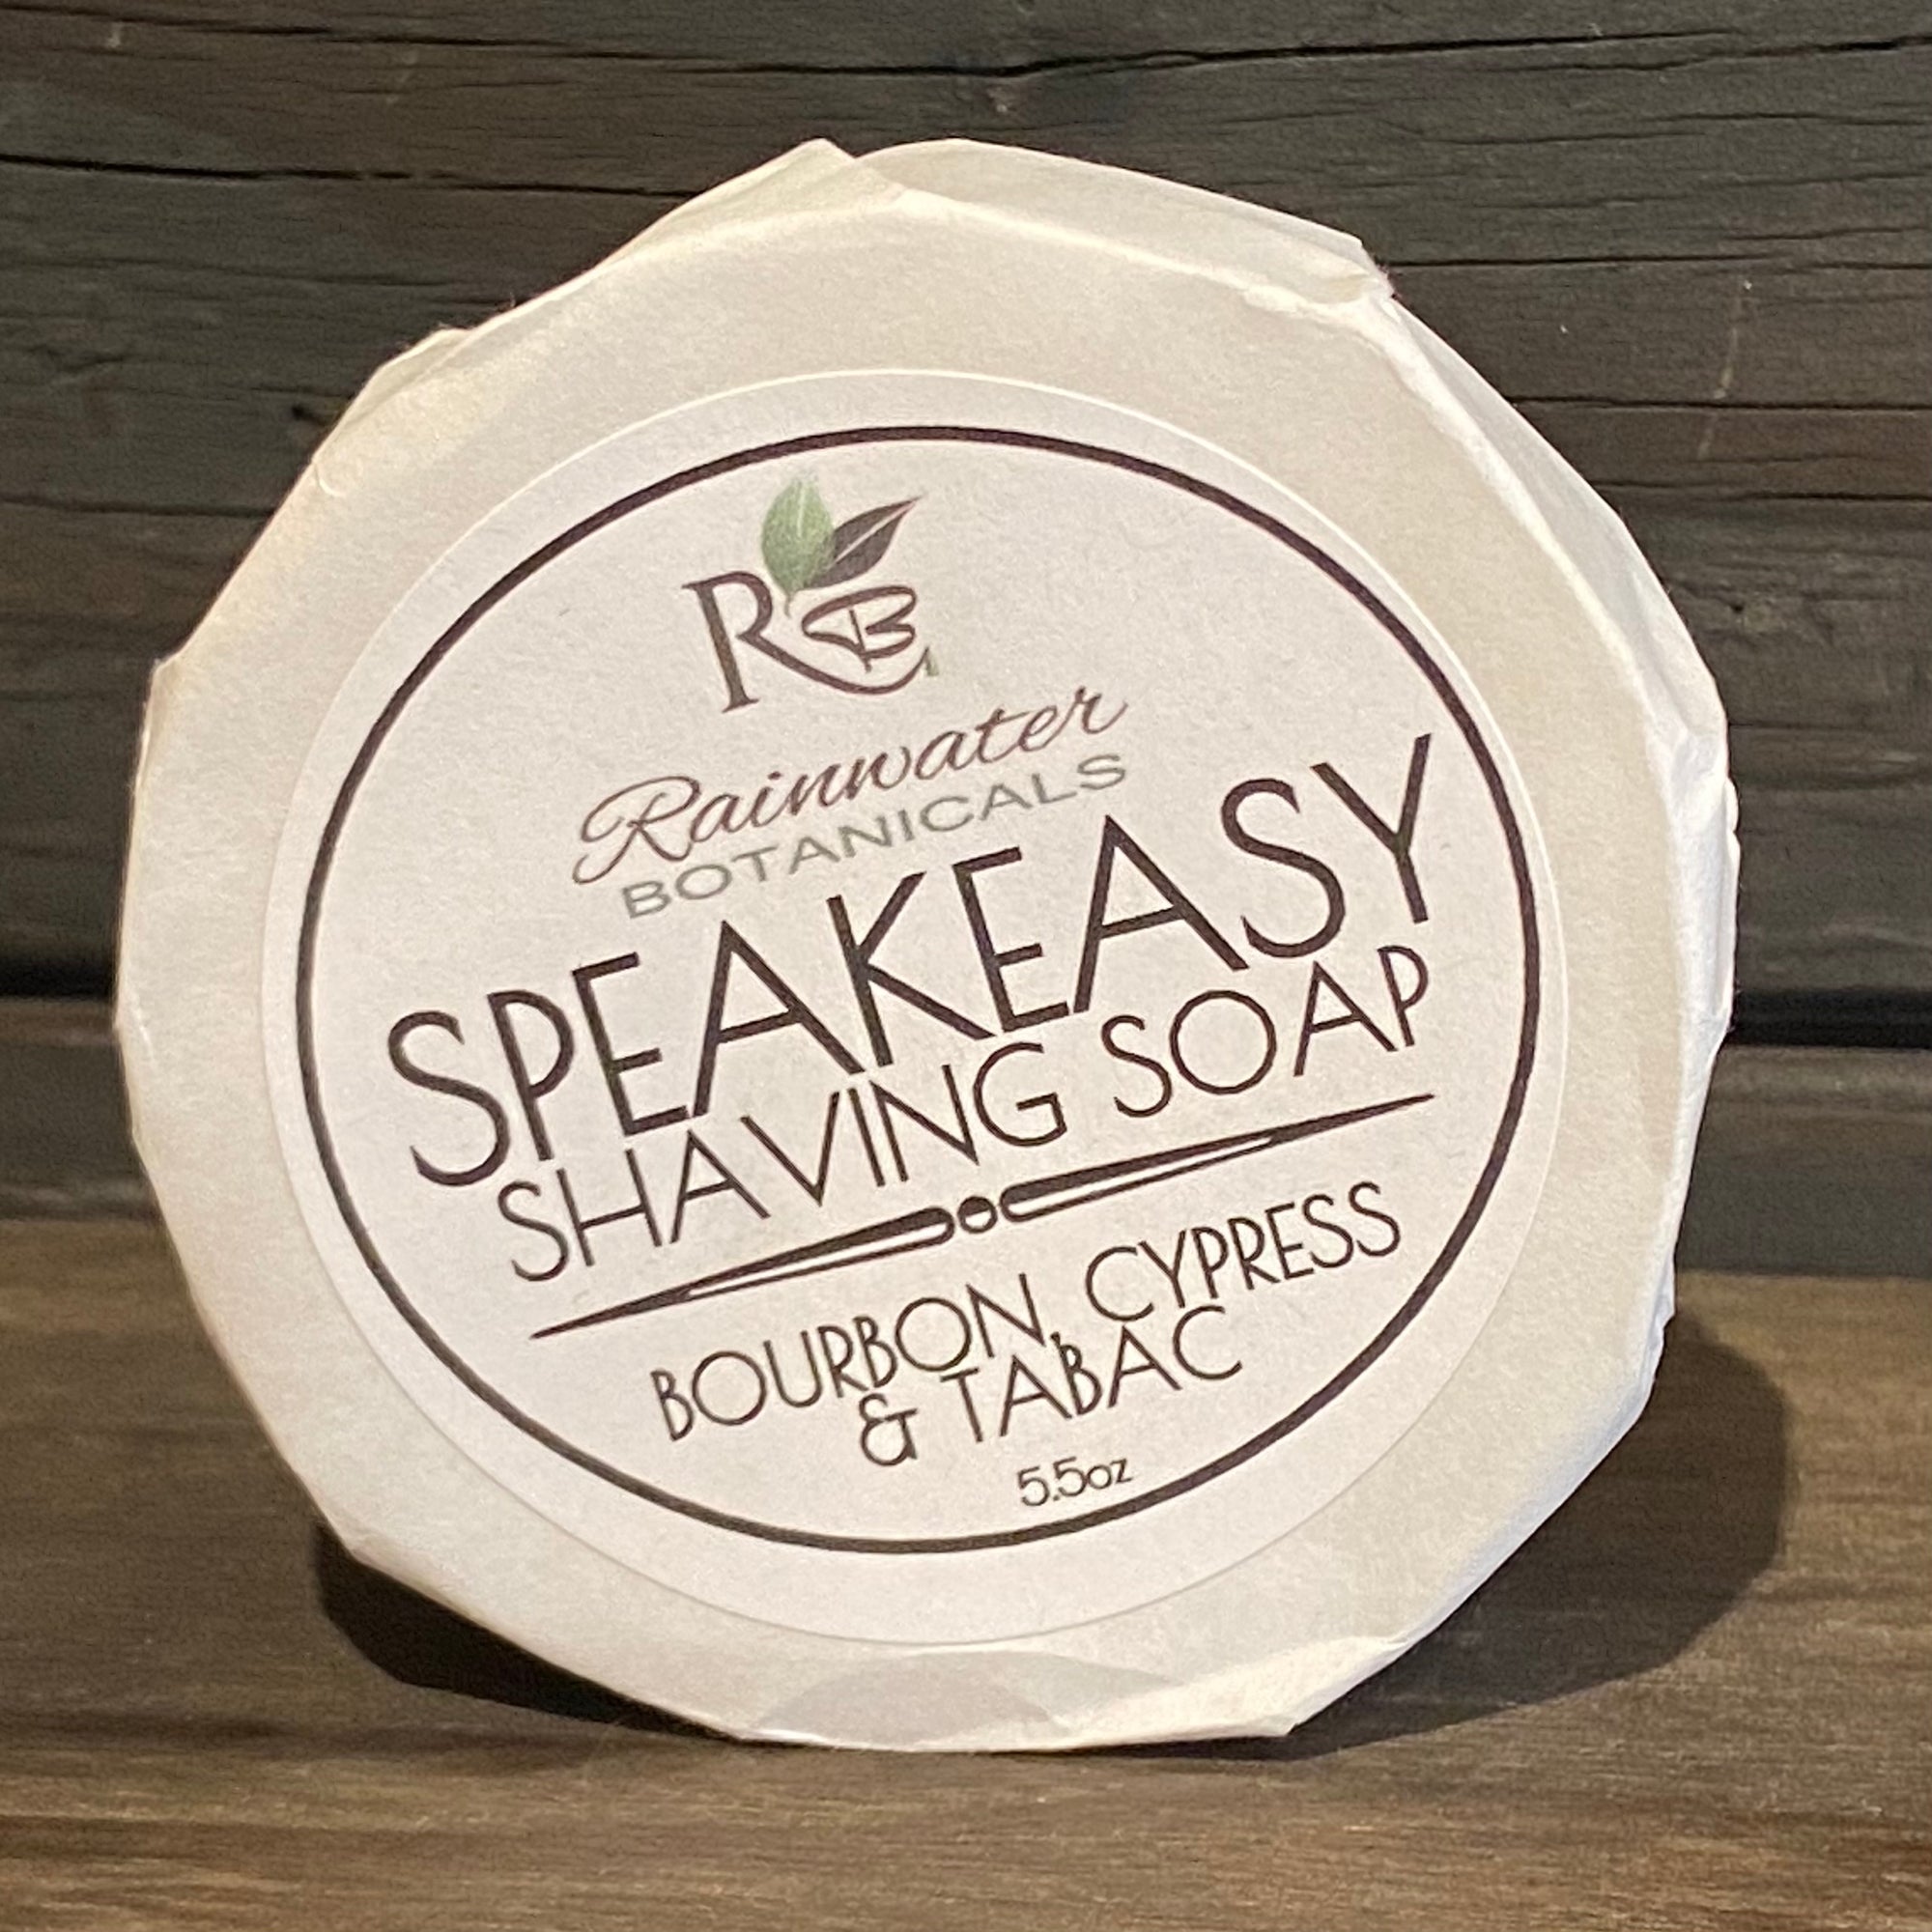 Speakeasy Shaving Soap - 5.5 oz - Off the Bottle Refill Shop